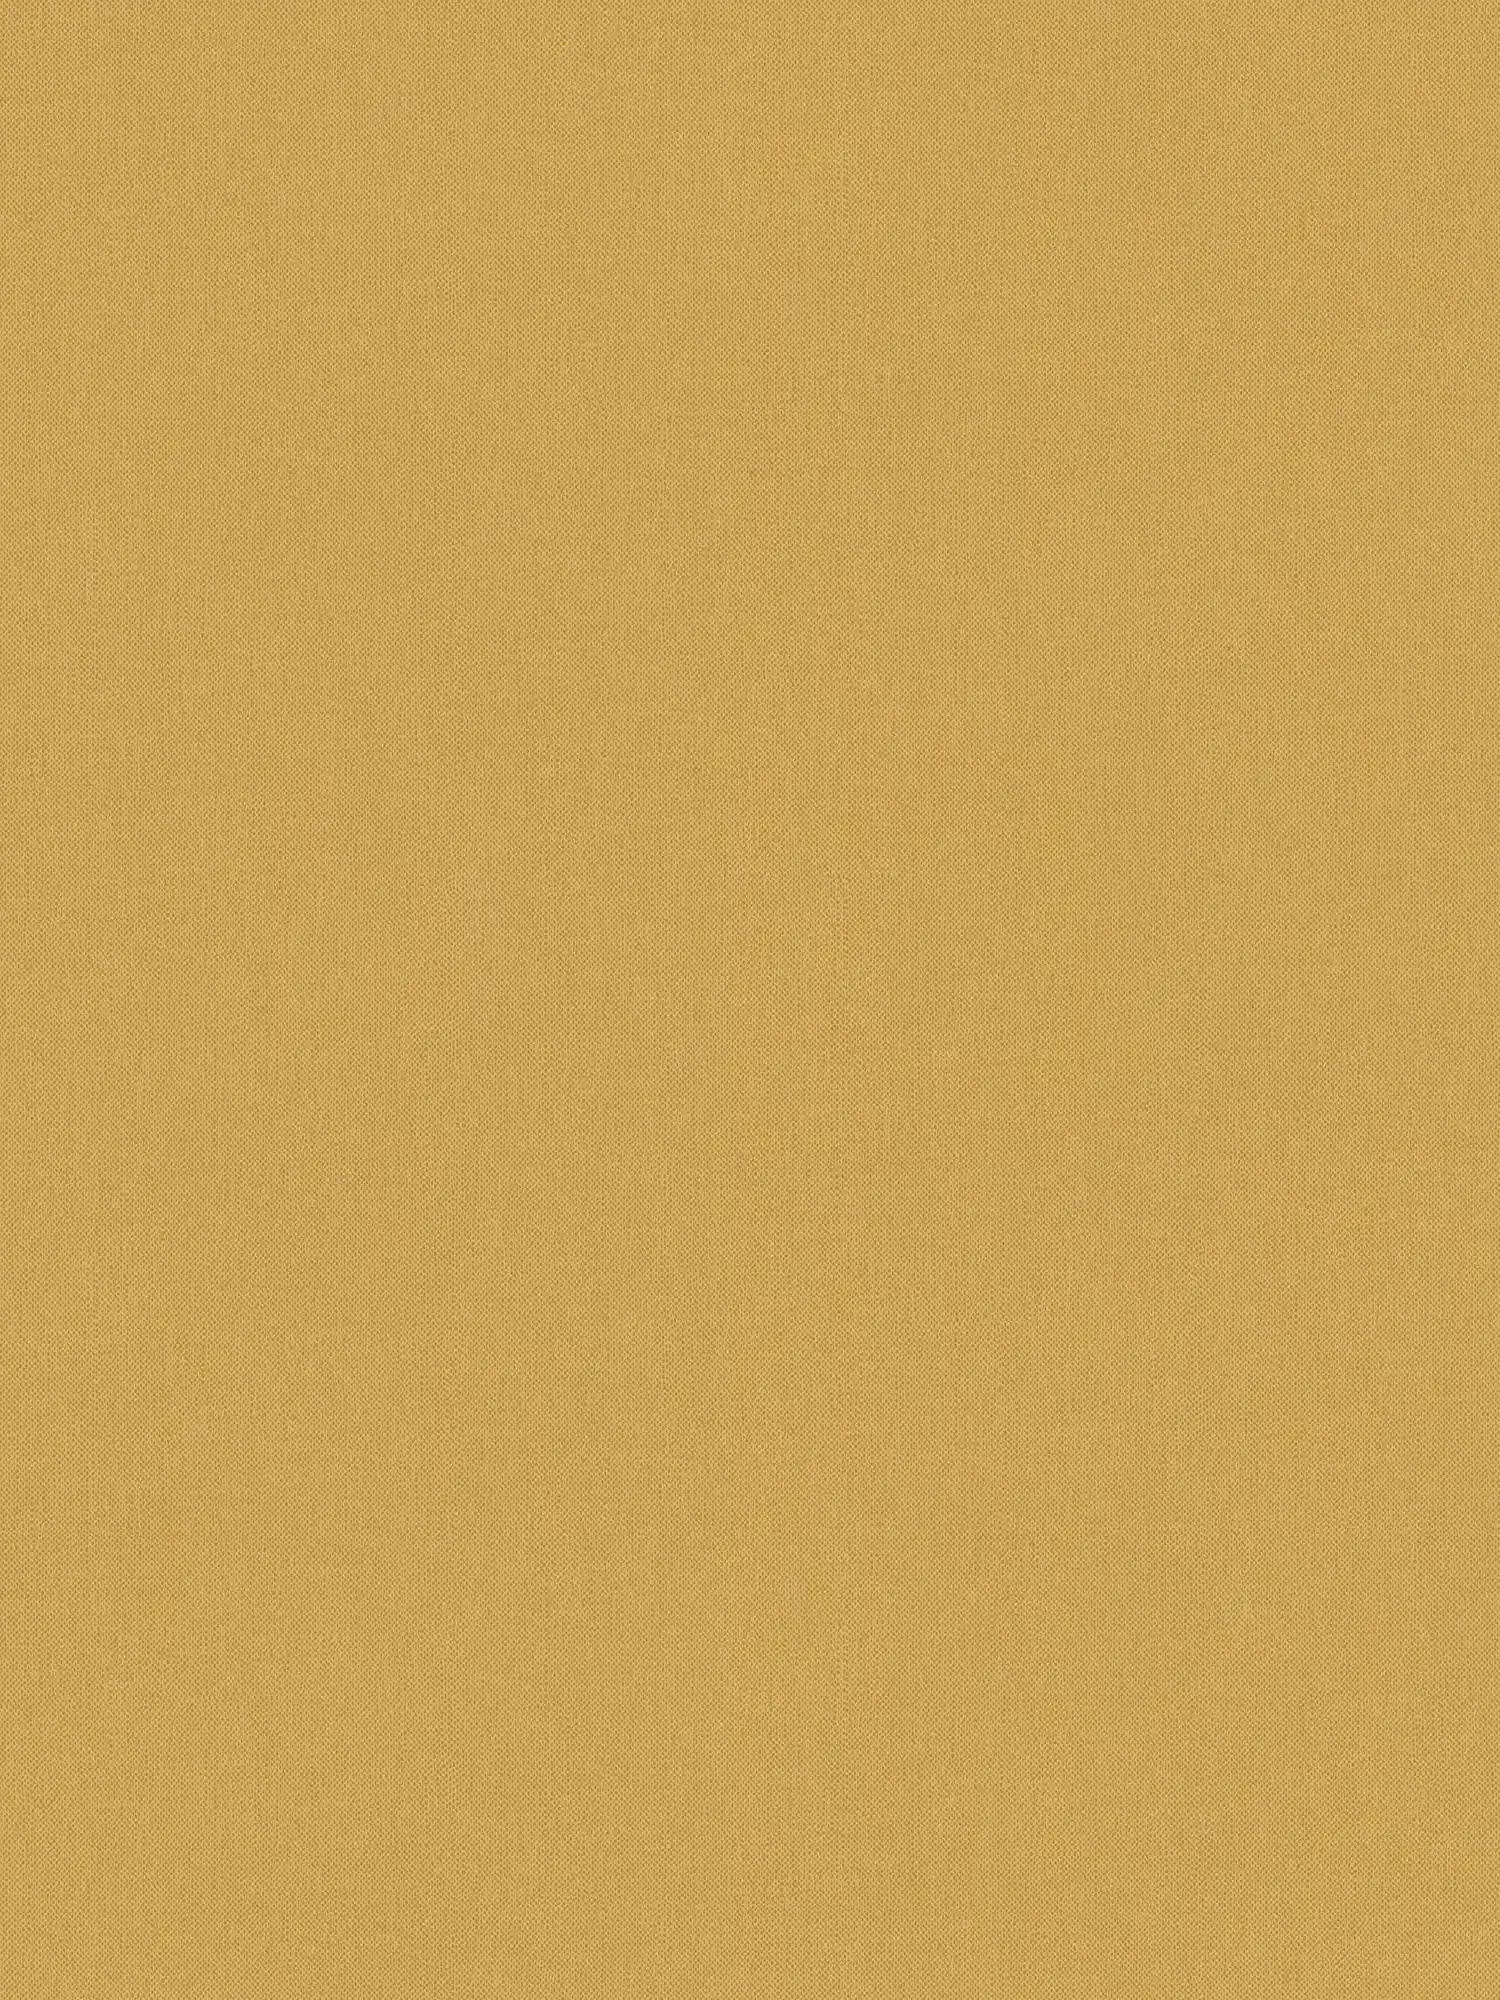 Papier peint aspect lin jaune moutarde uni & structure textile mate - jaune
